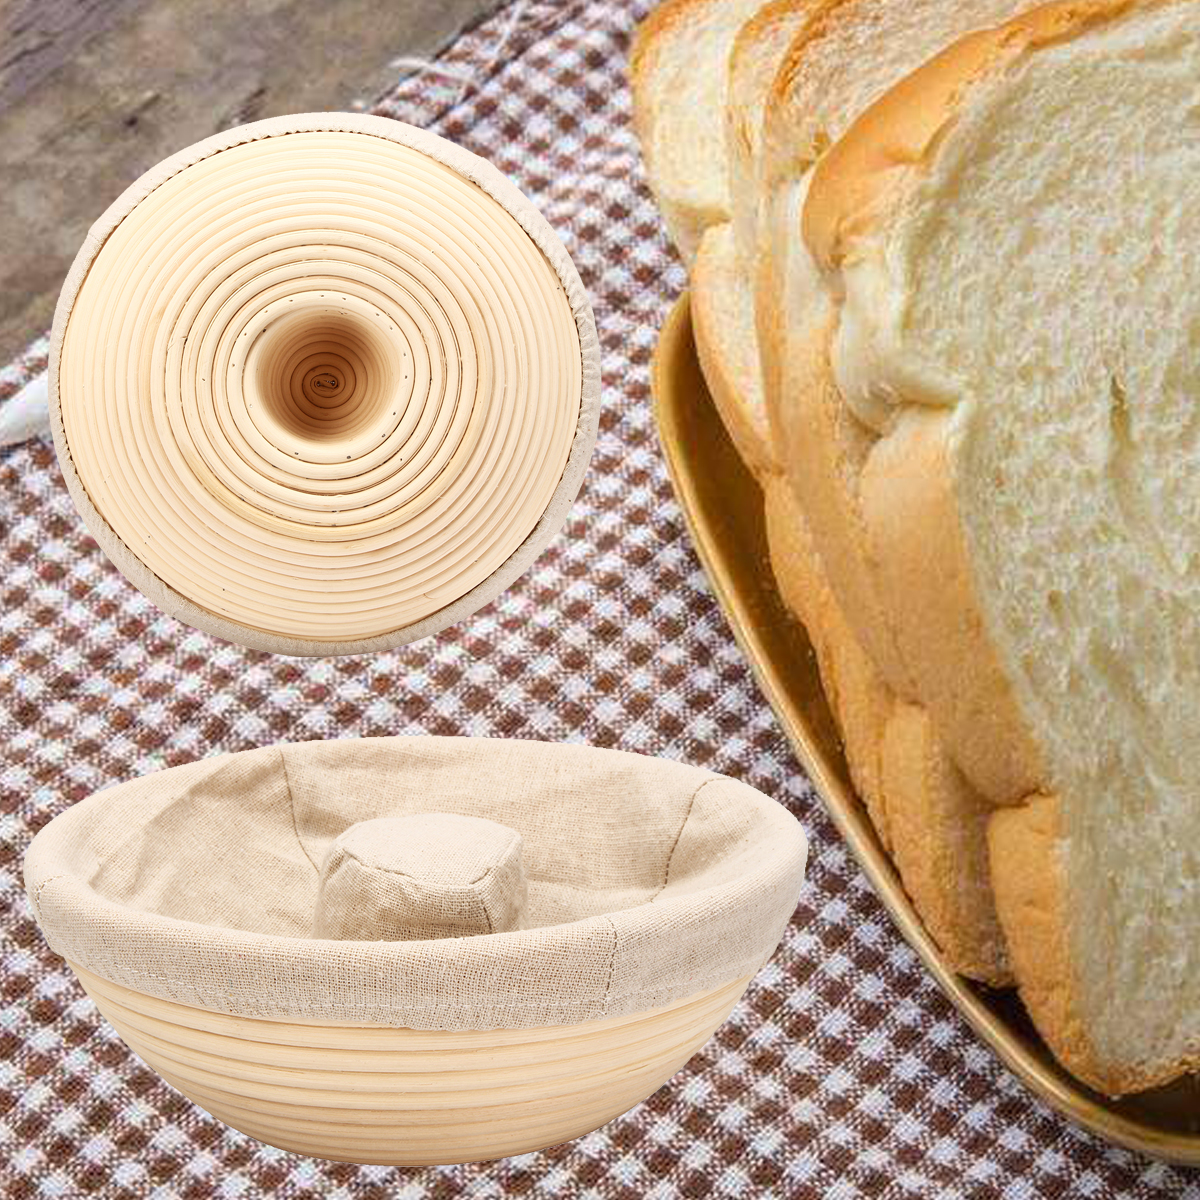 Handmade-Round-Oval-Banneton-Bortform-Rattan-Storage-Baskets-Bread-Dough-Proofing-Liner-1383037-6